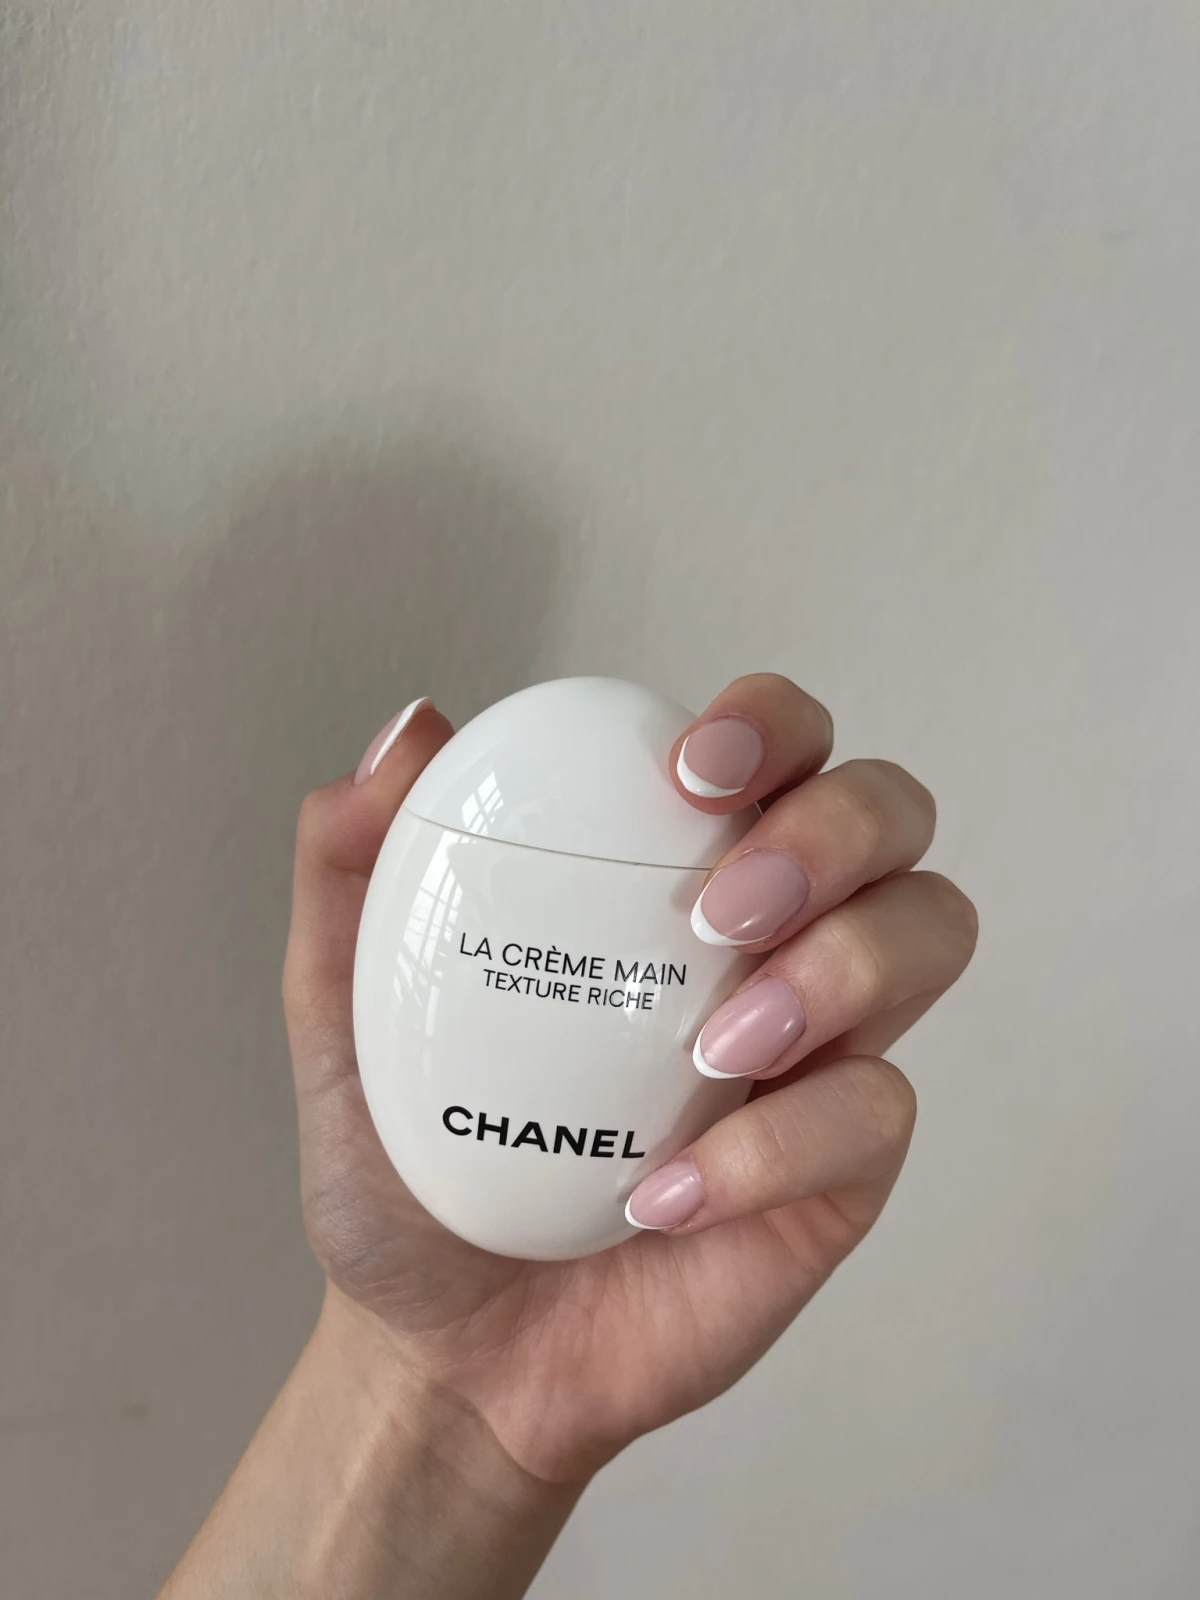 Chanel Verzacht Verheldert Chanel - La Crème Main Verzacht-verheldert - review image